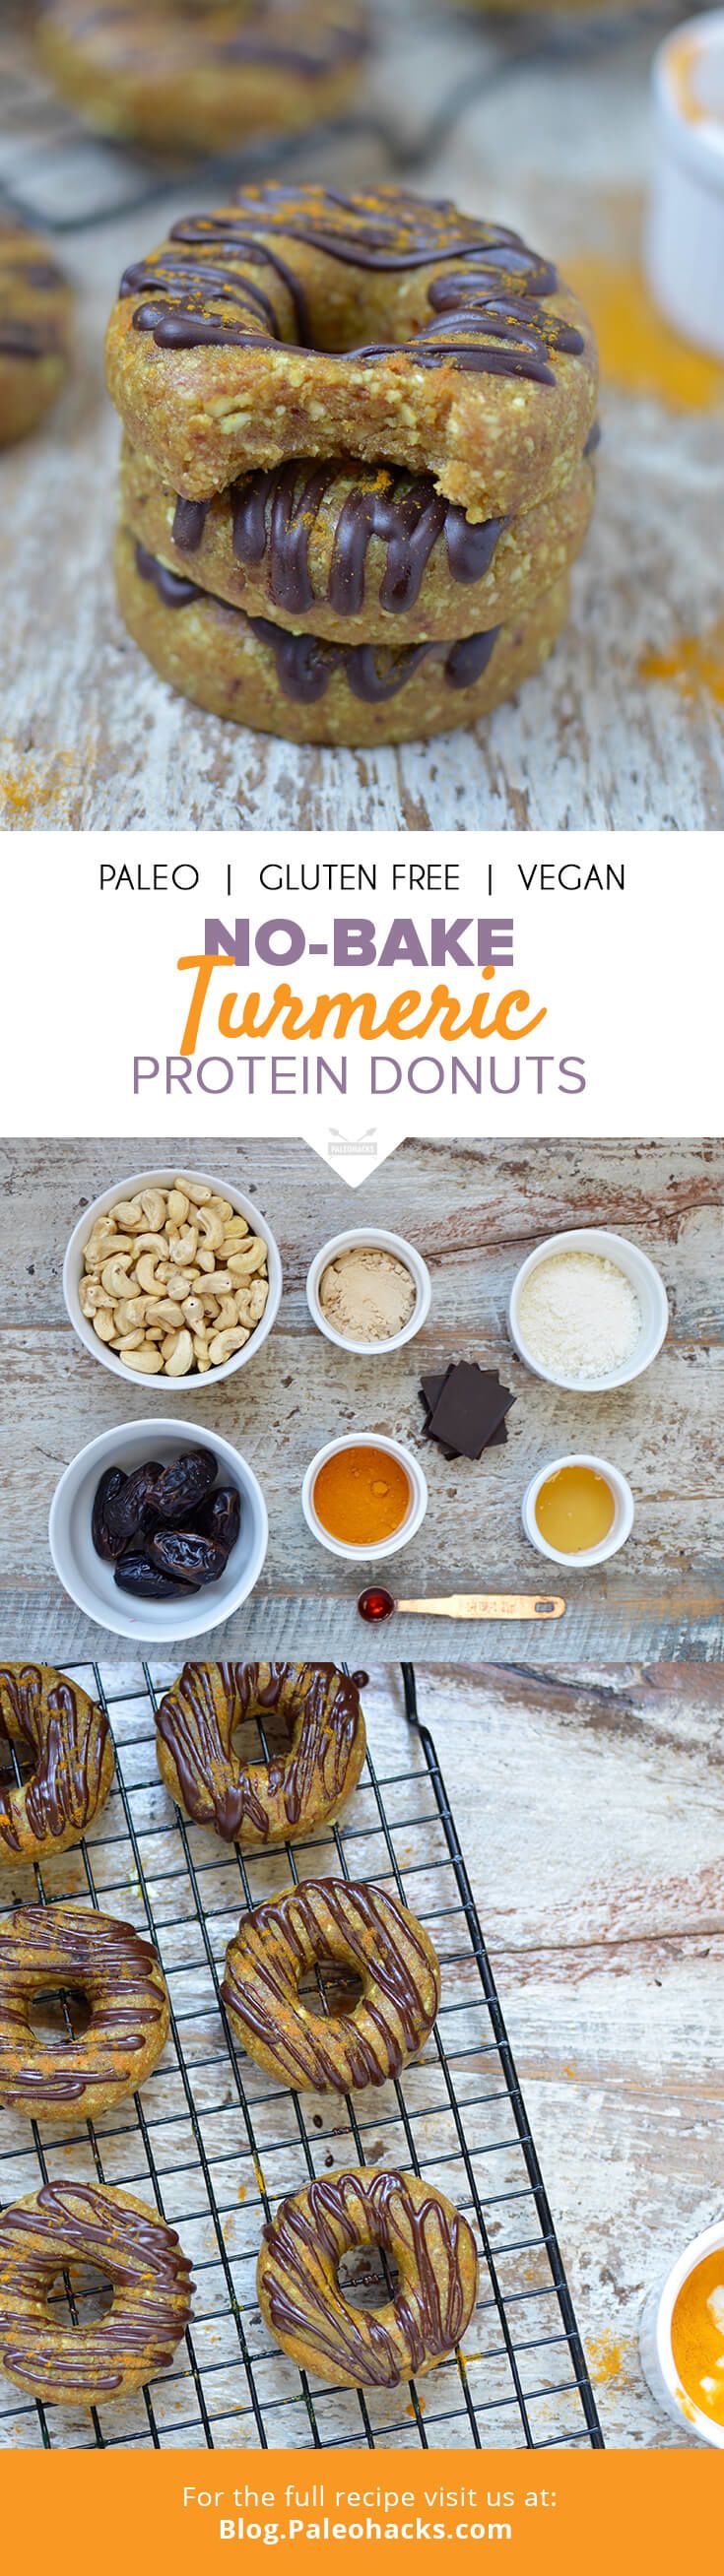 no-bake turmeric protein donuts pin